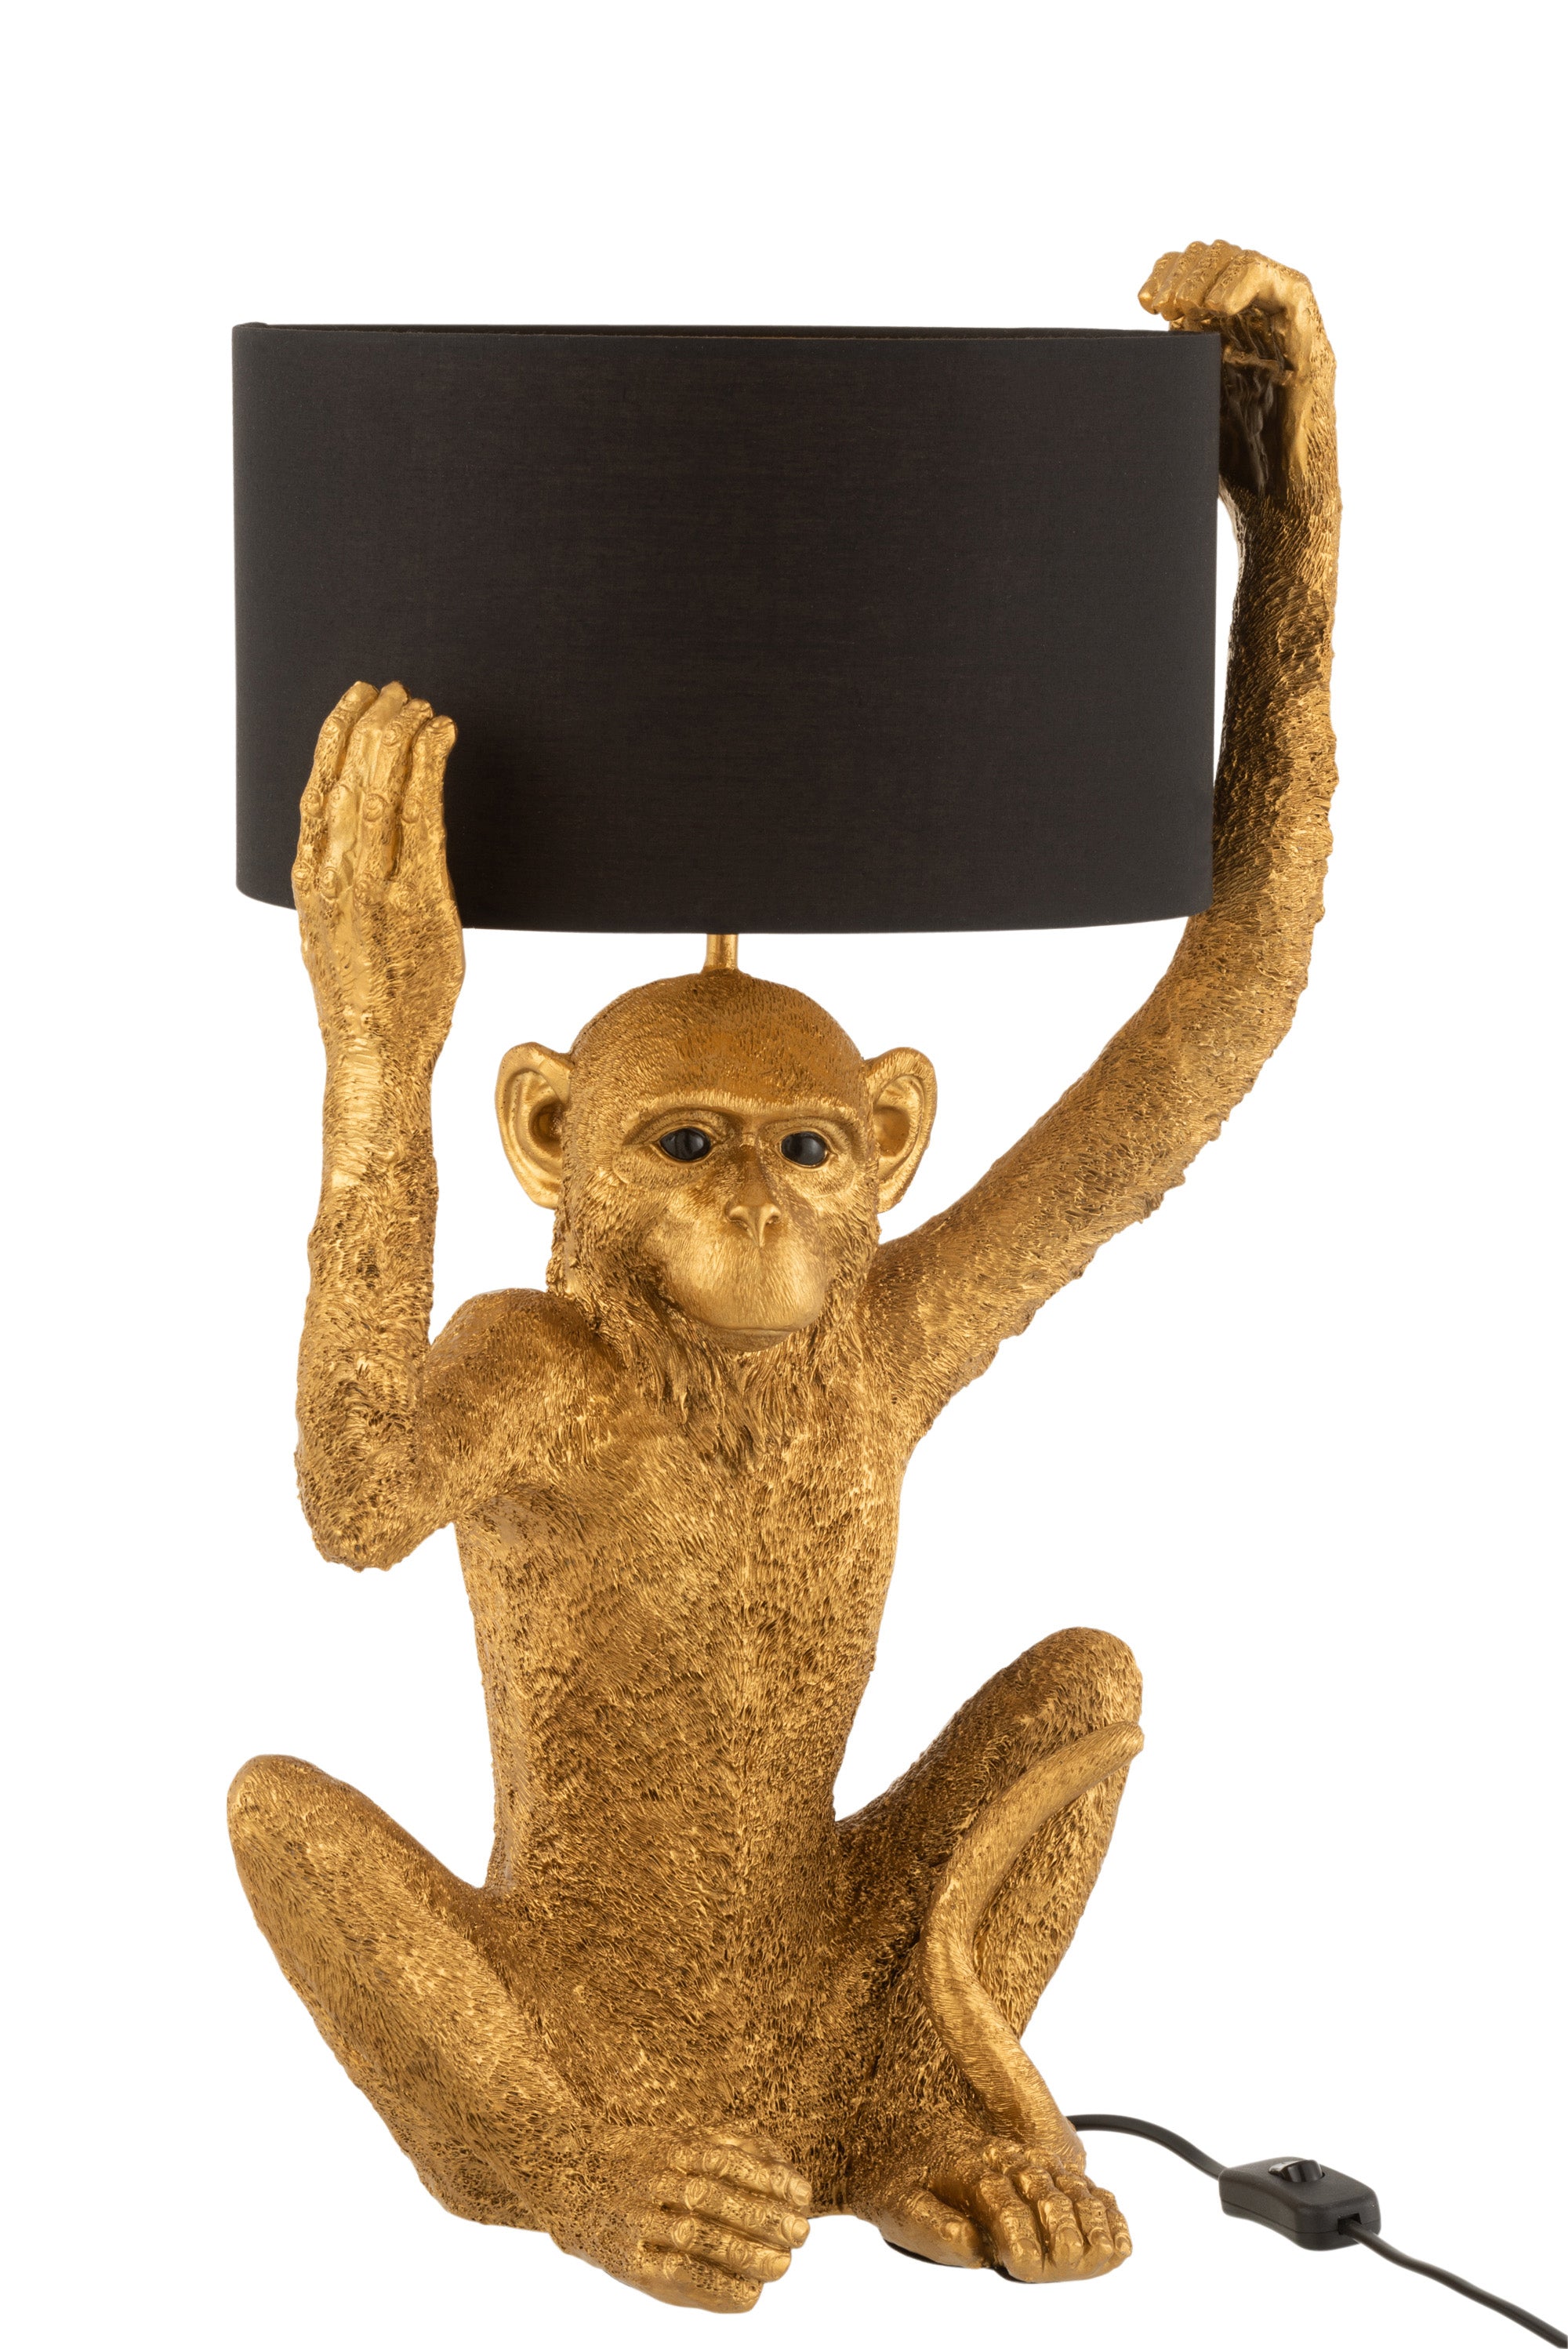 Originelle Tischlampe im Design eines goldfarbenen Schimpansen, der sich einen schwarzen , runden Lampenschirm über den Kopf hält.